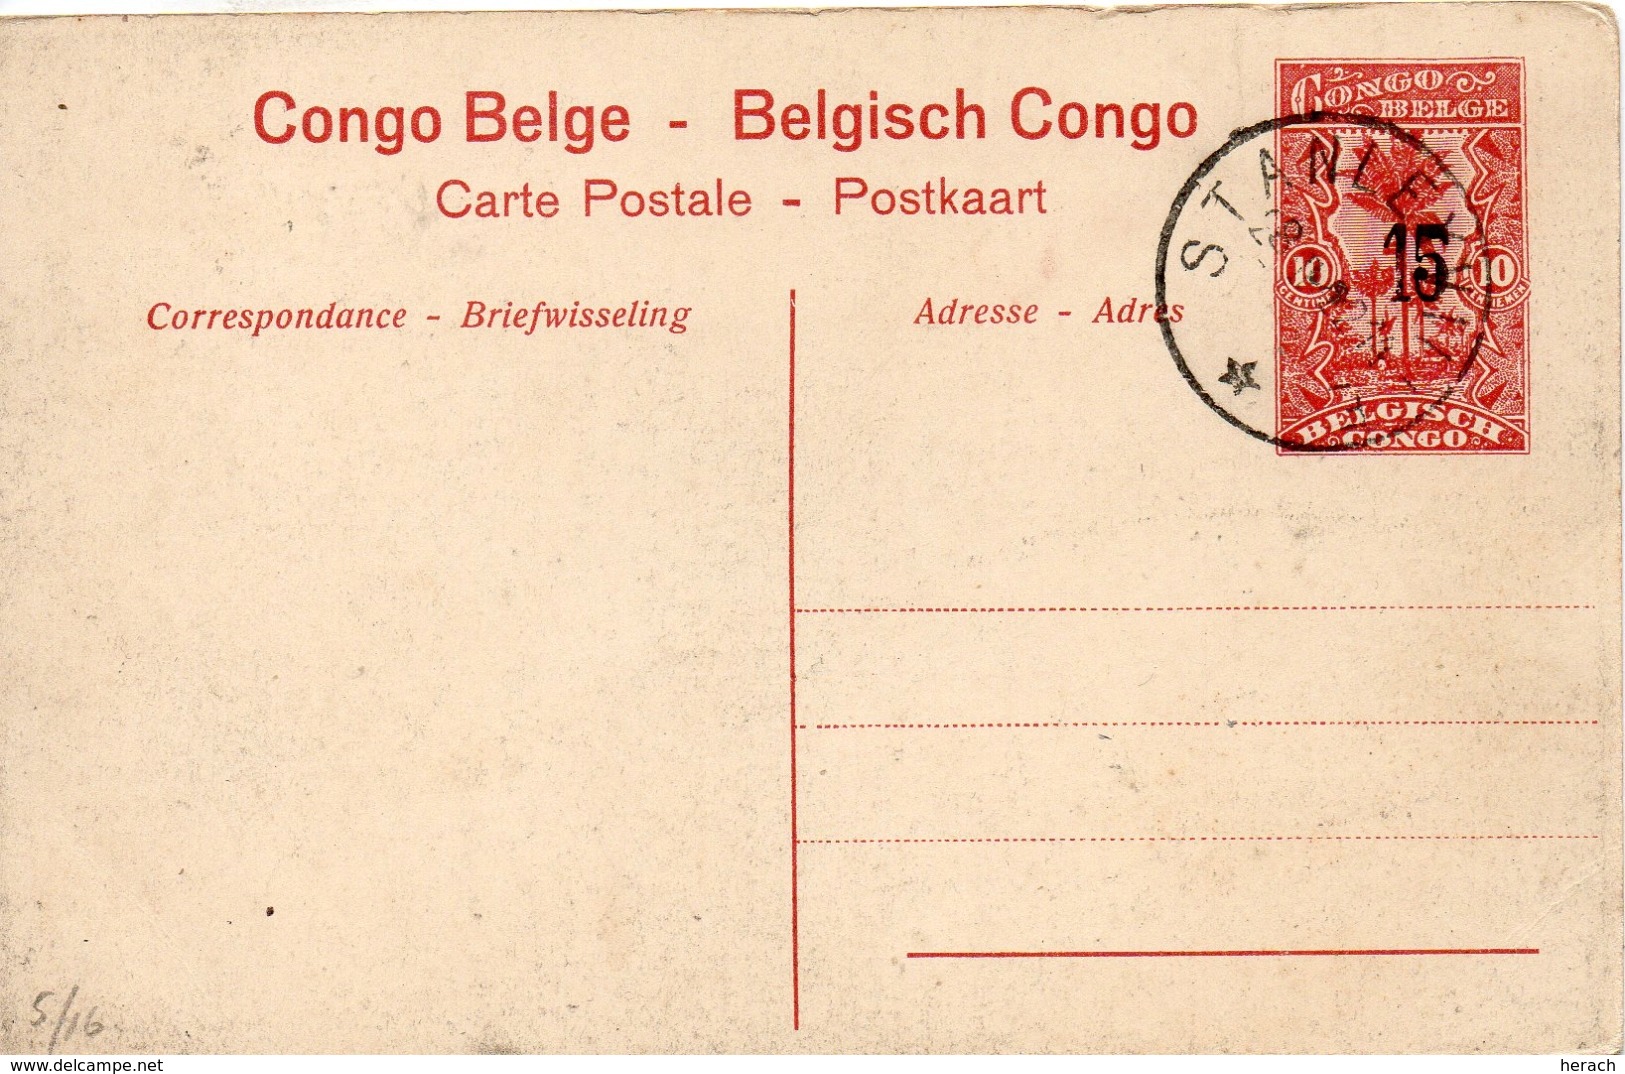 Congo Belge Entier Postal Illustré - Ganzsachen